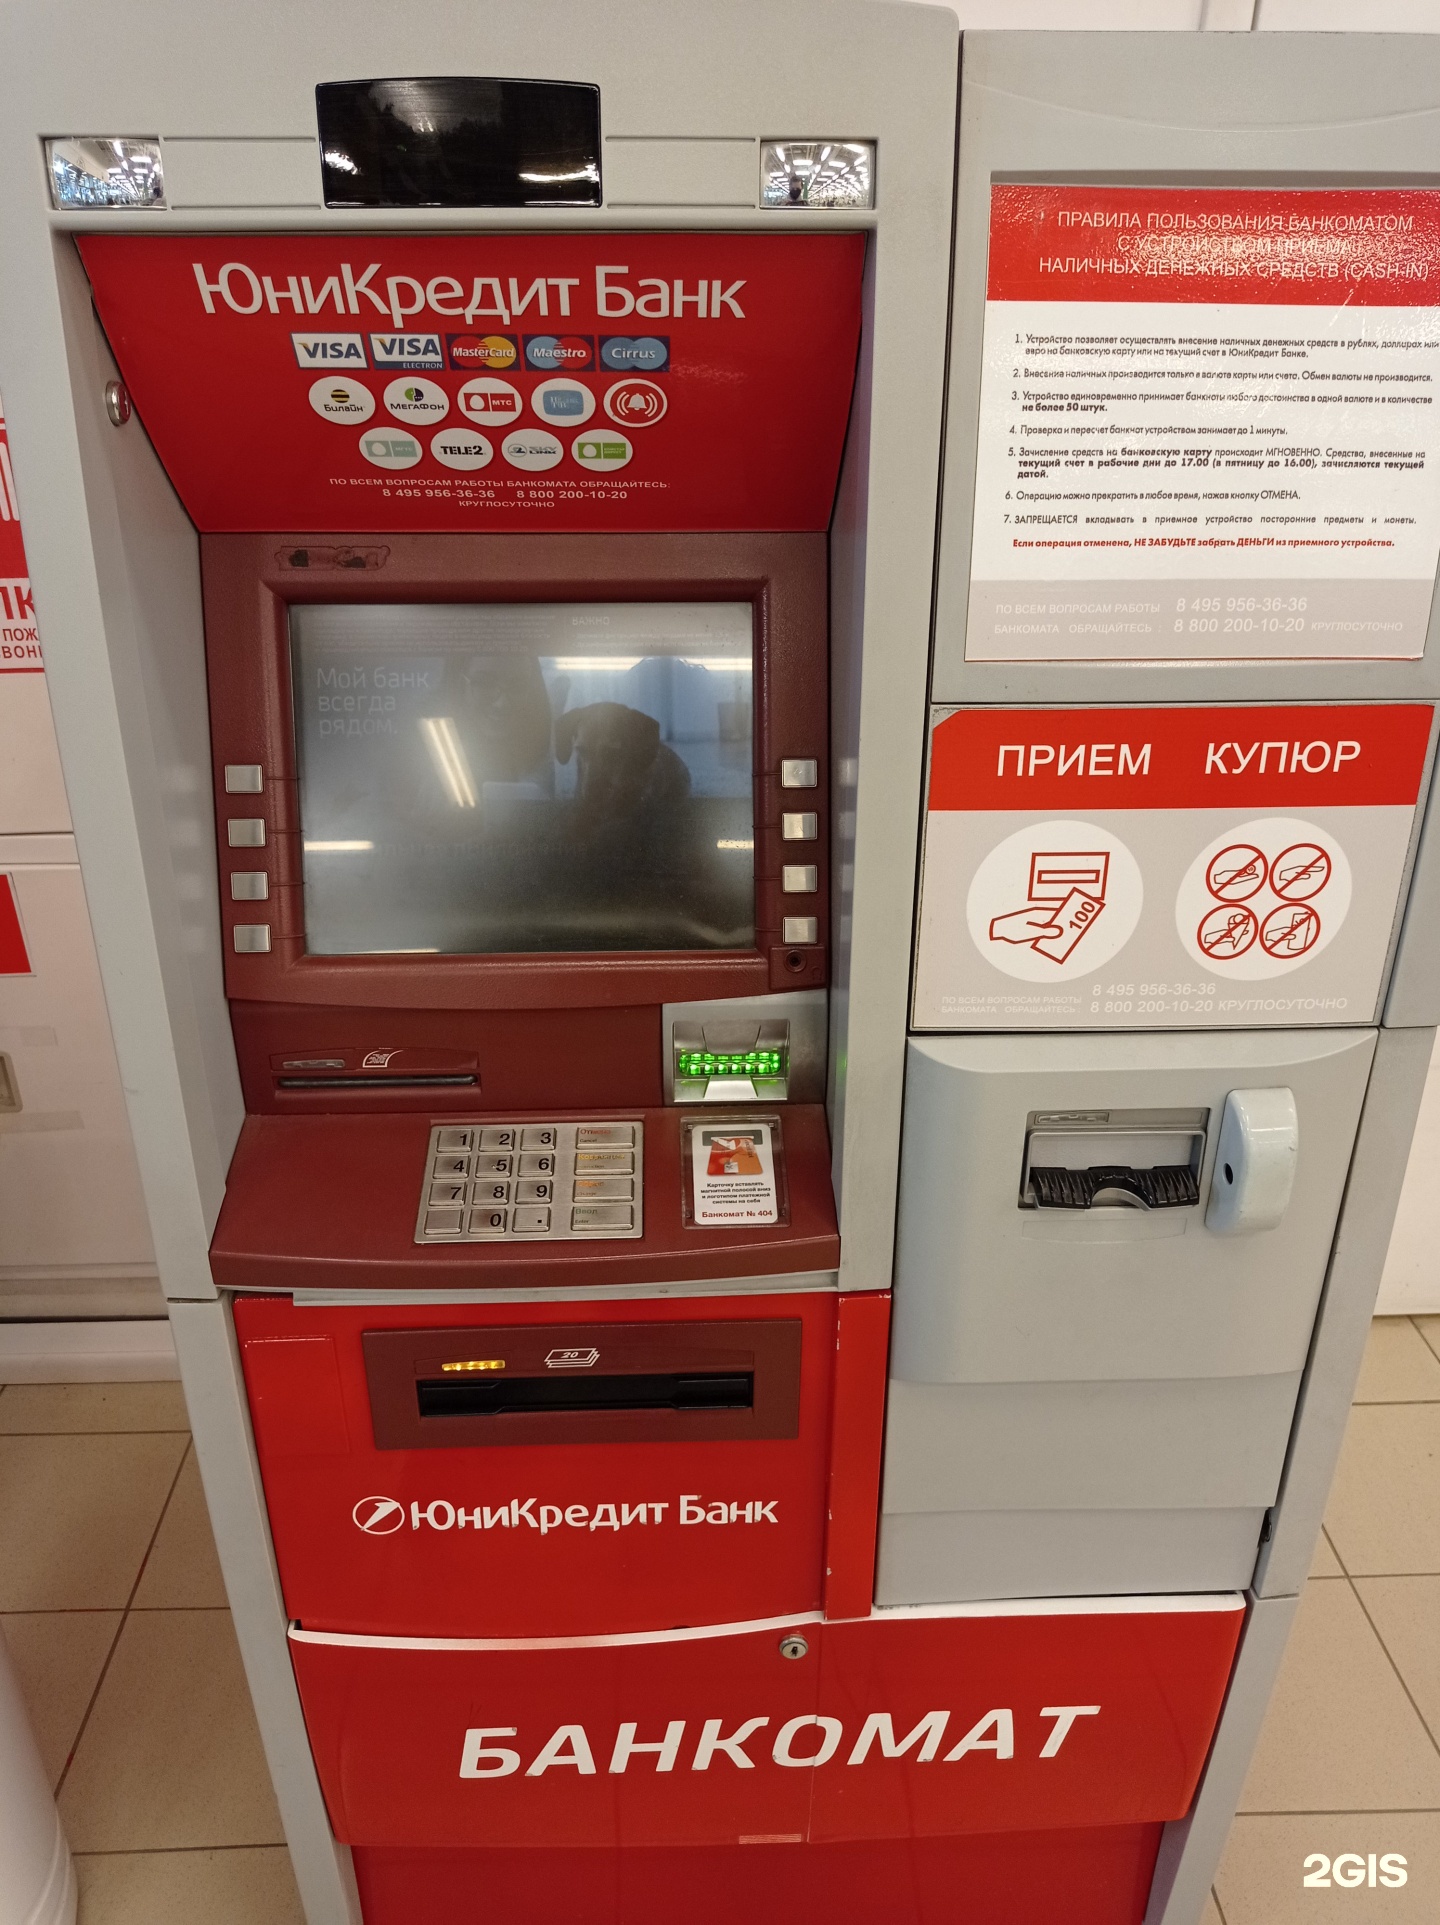 обмен валюты через банкомат спб